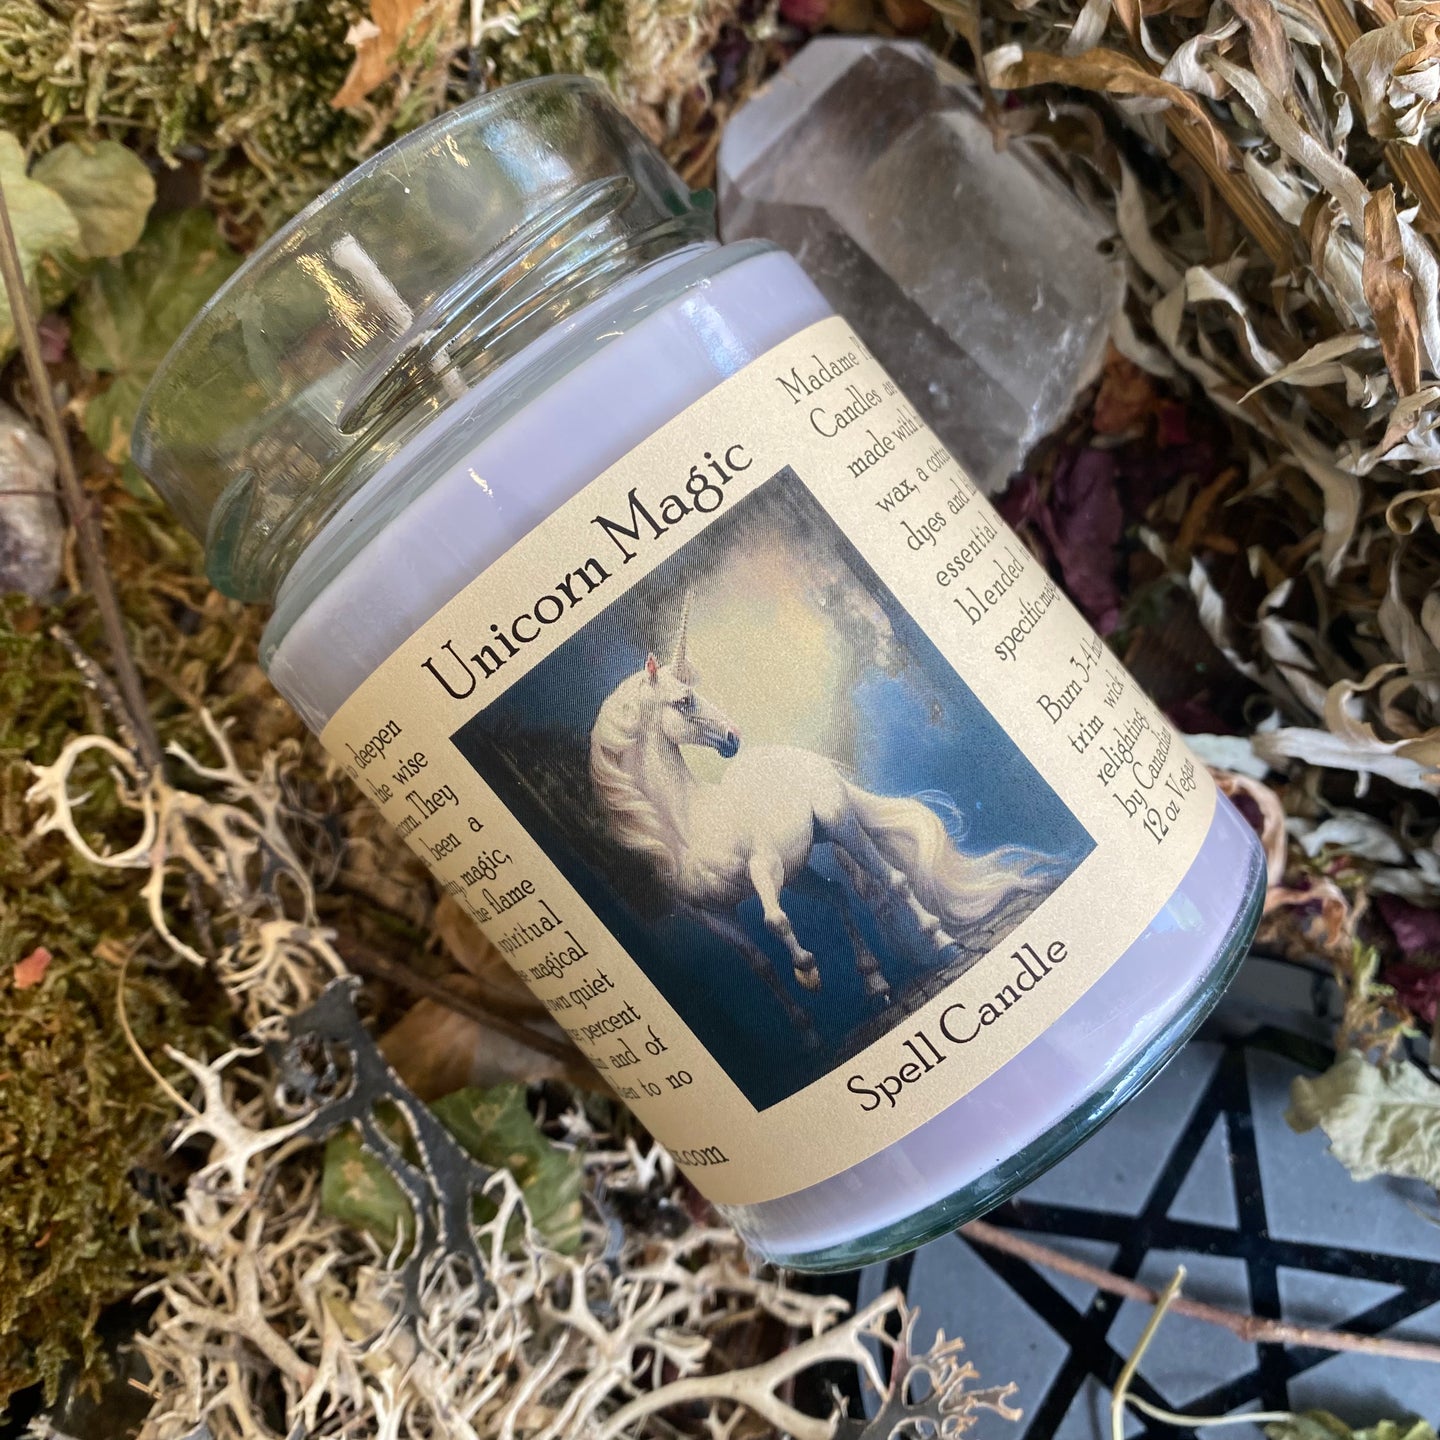 Unicorn magic spirit altar candle